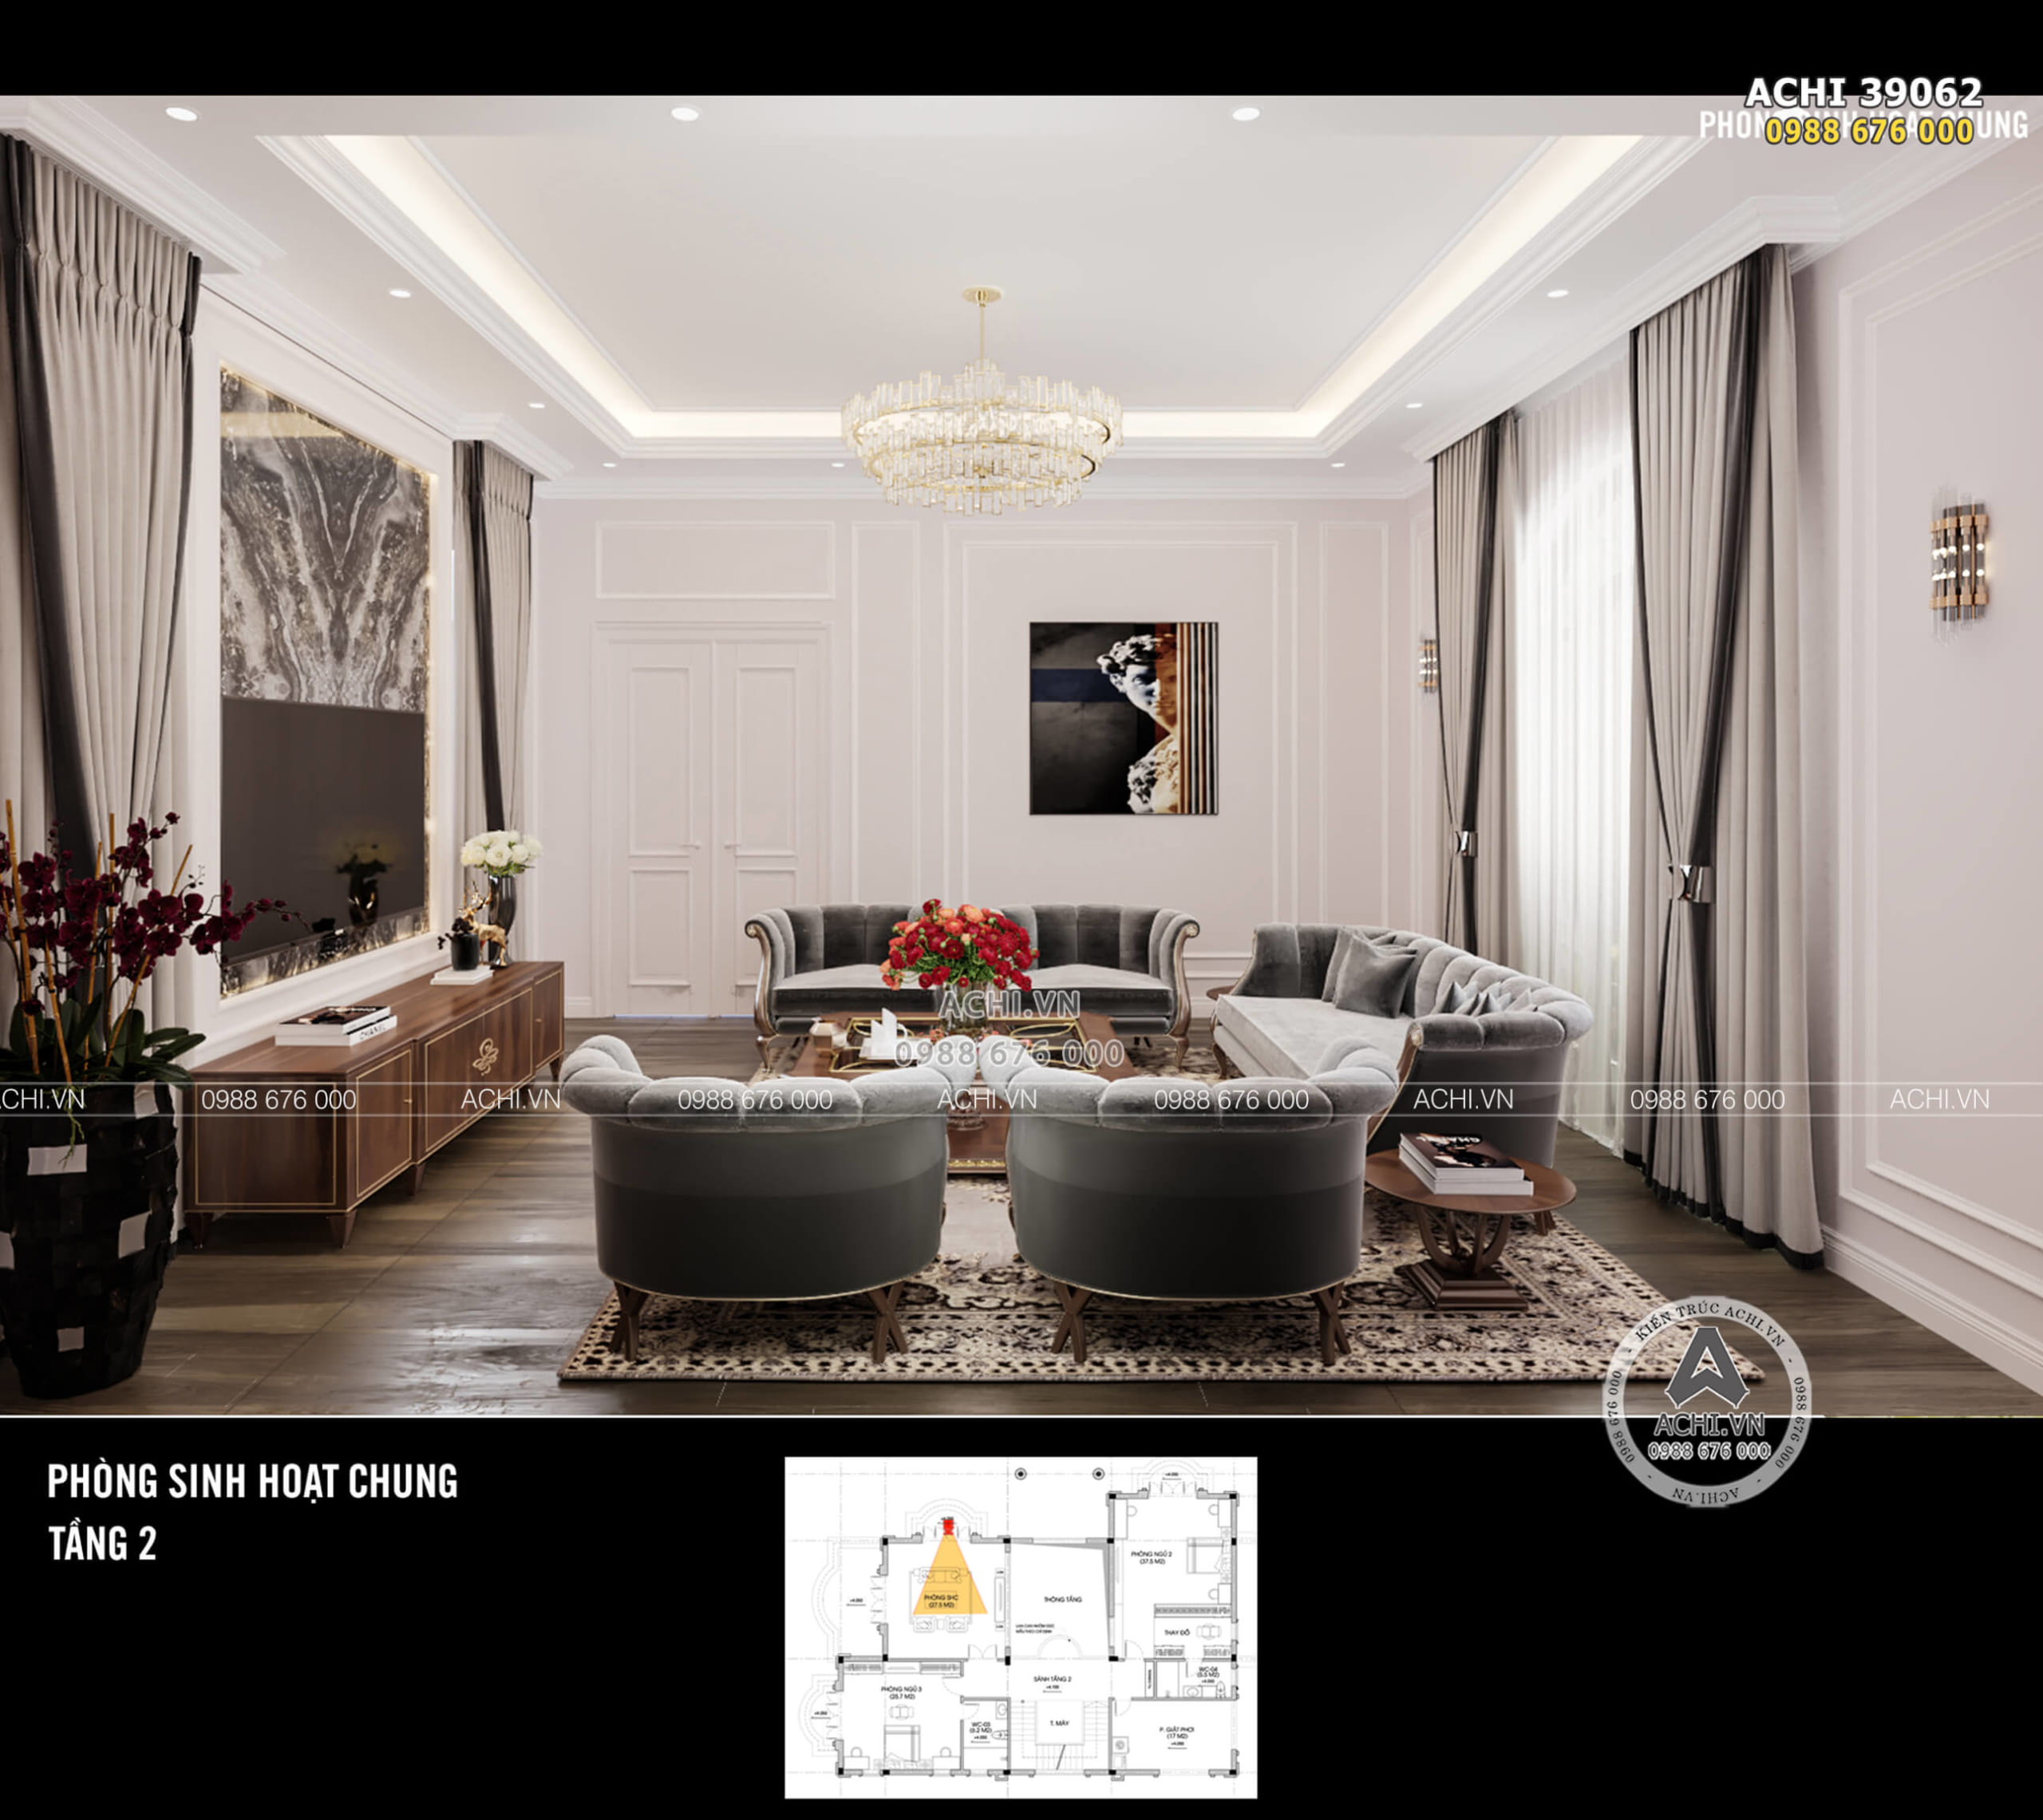 Thiết kế nội thất phòng sinh hoạt chung nổi bật với bộ sofa lớn nhập khẩu nguyên chiếc